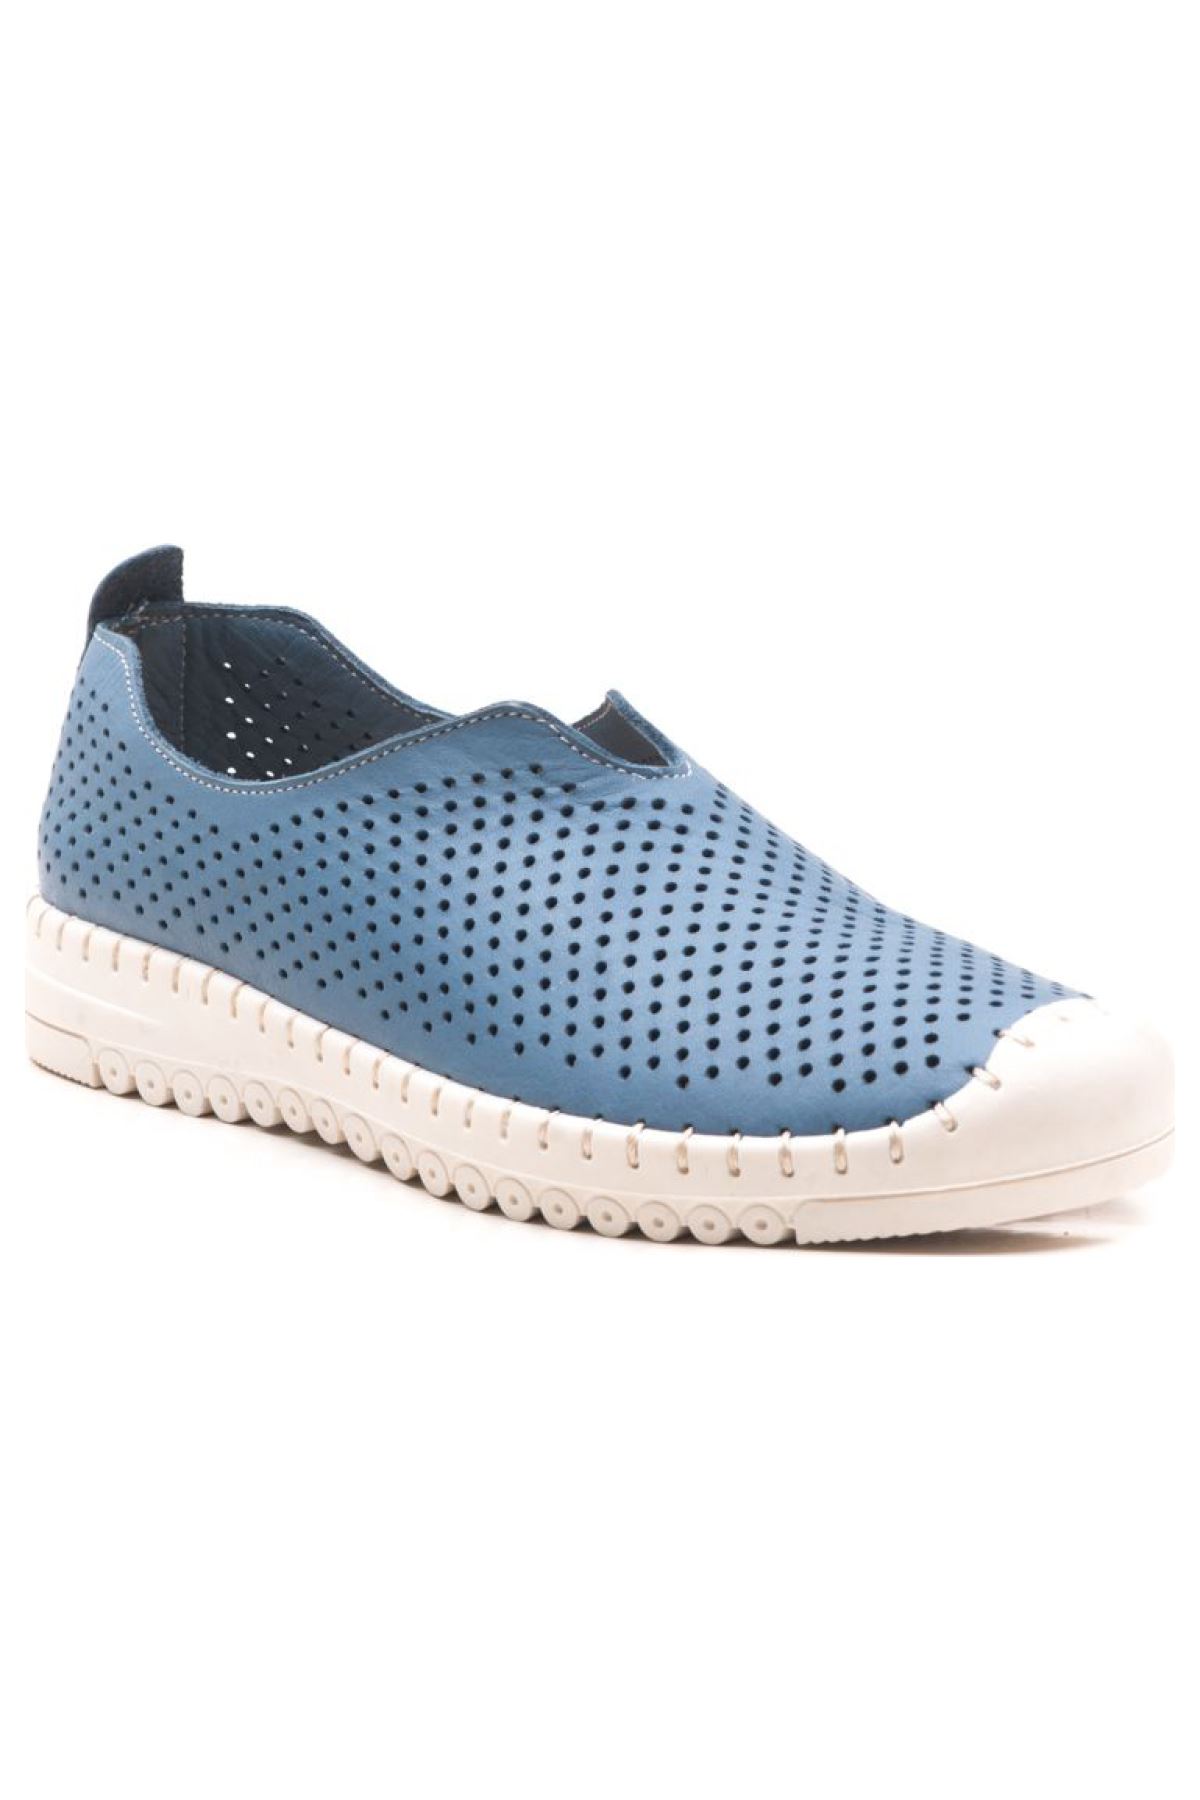 Hakiki Deri Kadın Deri Casual Ayakkabı Siena Gate Shoes-Mavi